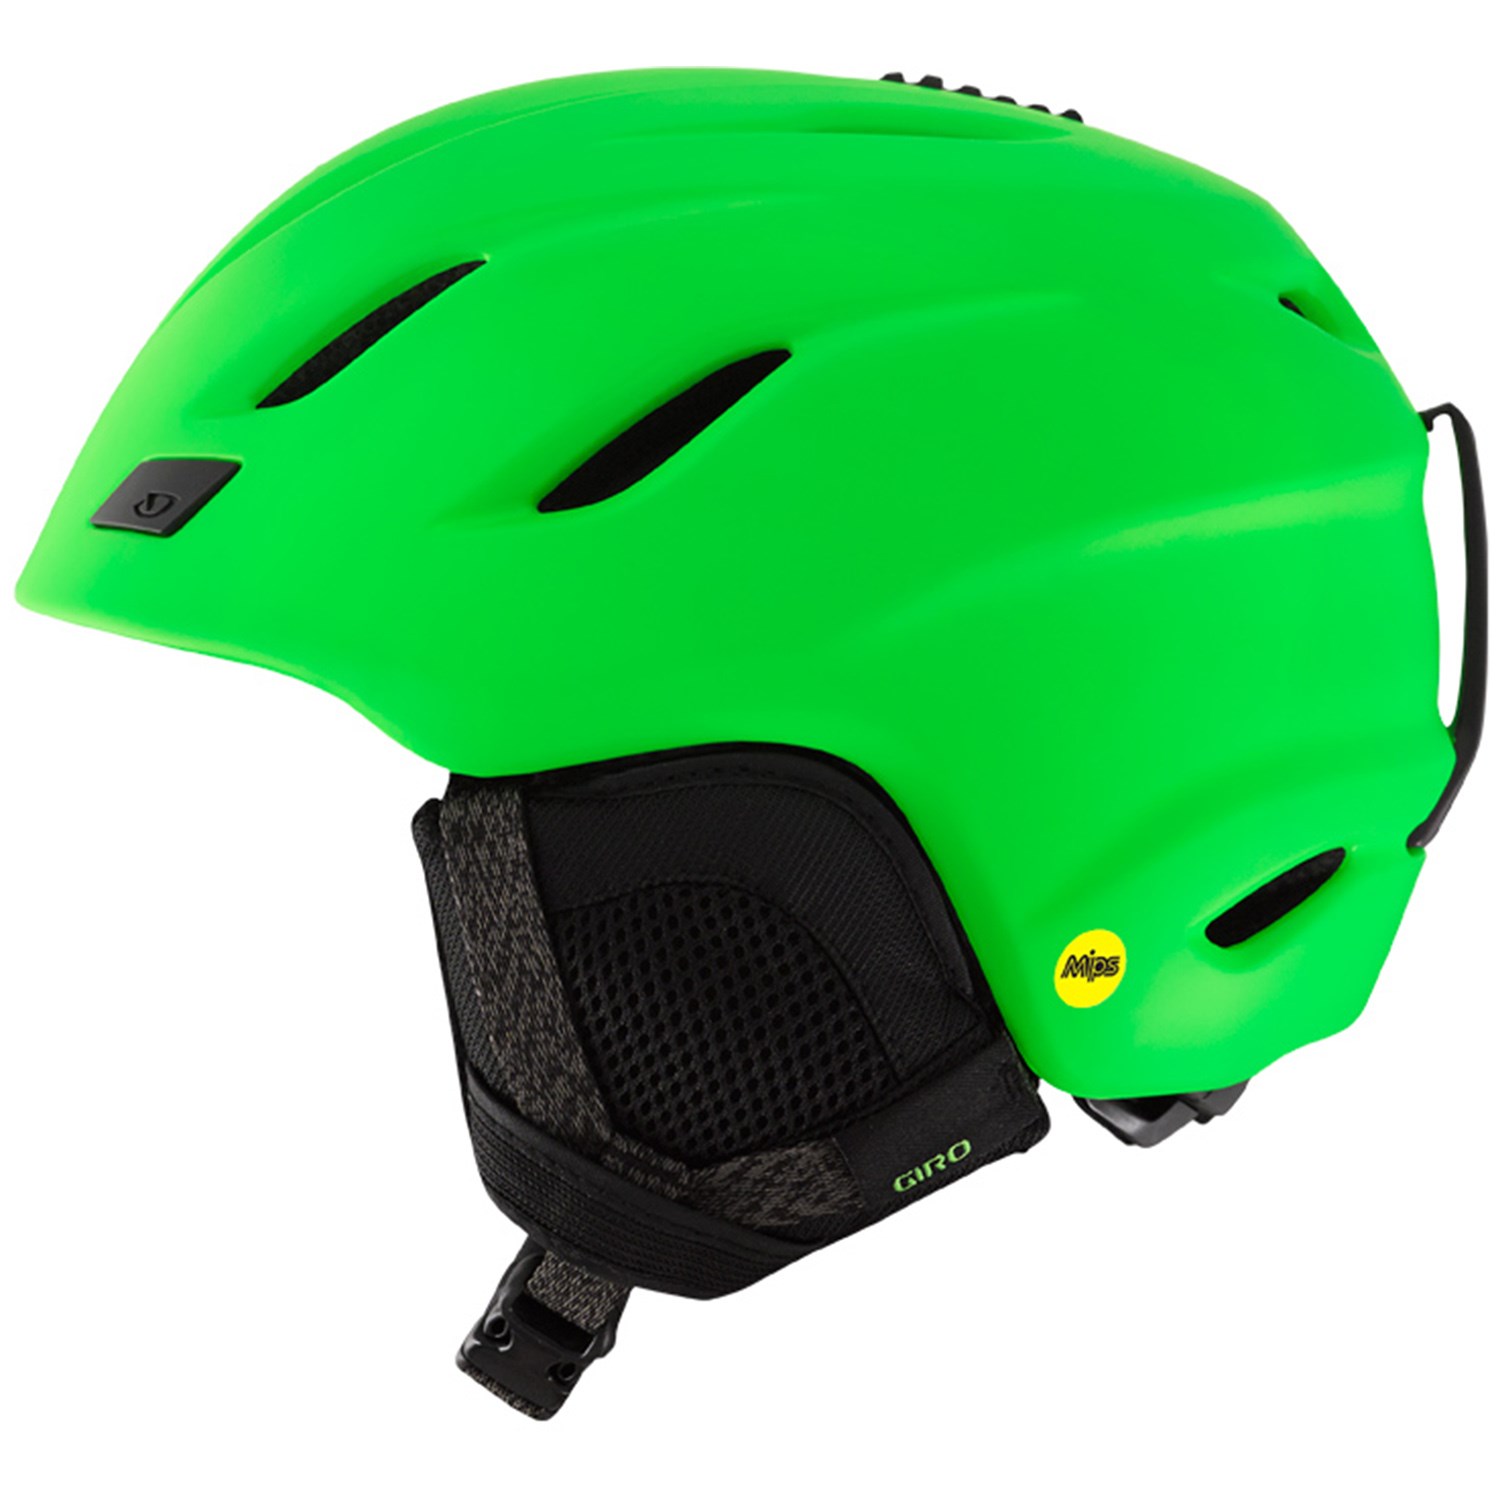 Green ski helmet photo